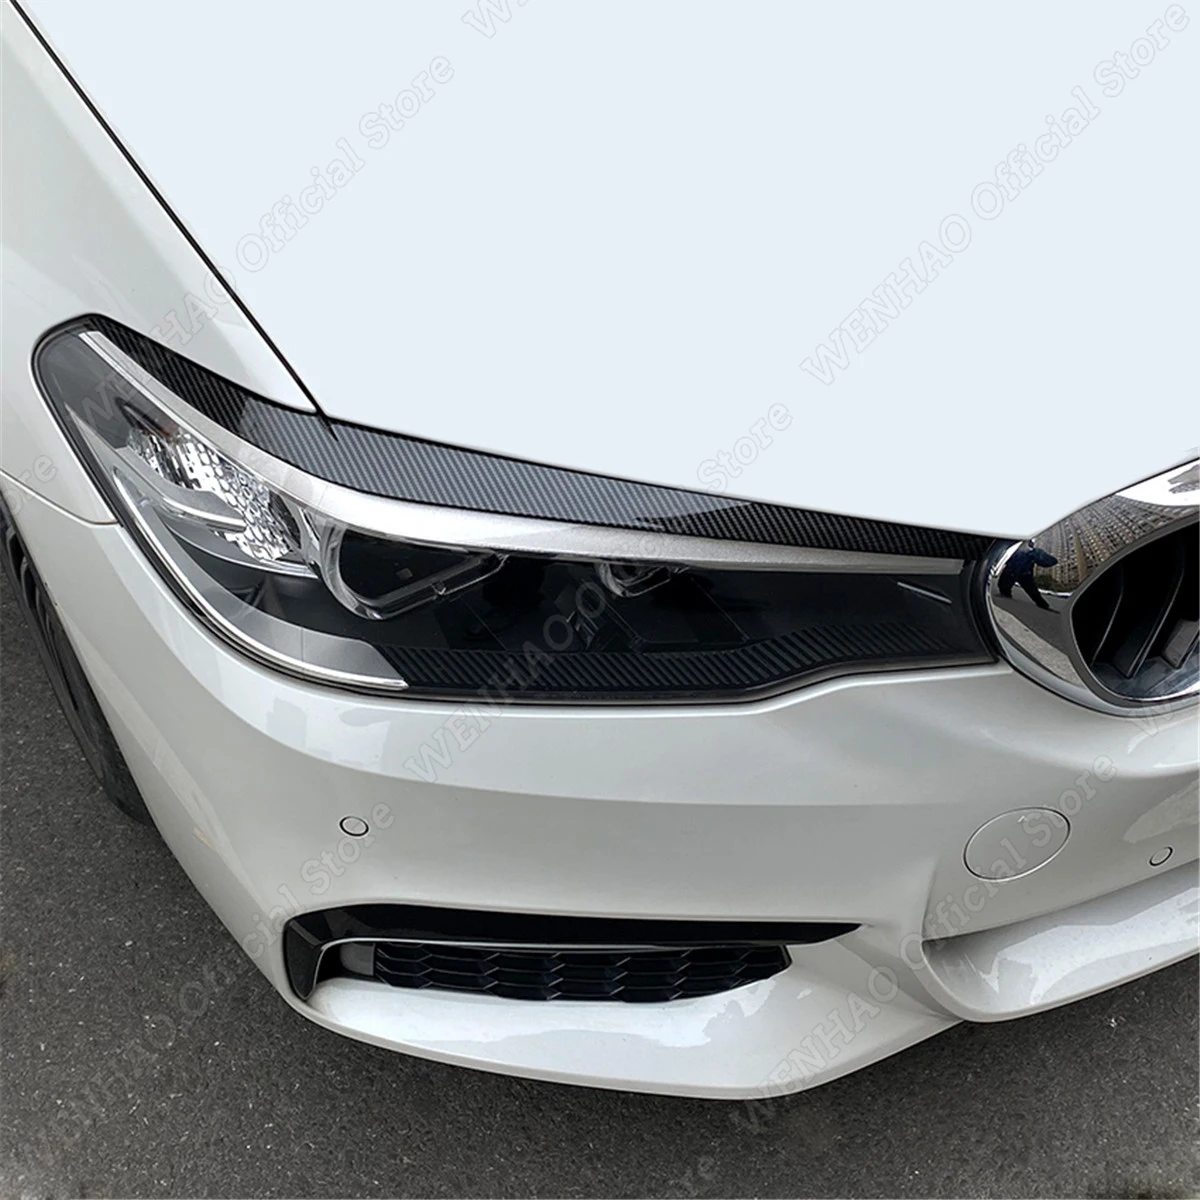 BORATO 2 Stück Auto-Scheinwerfer-Augenbraue für BMW 5 Series F10 F11  2011-2014,Scheinwerfer Augenbrauen Augenlider Dekoration Abdeckung Trim  Auto